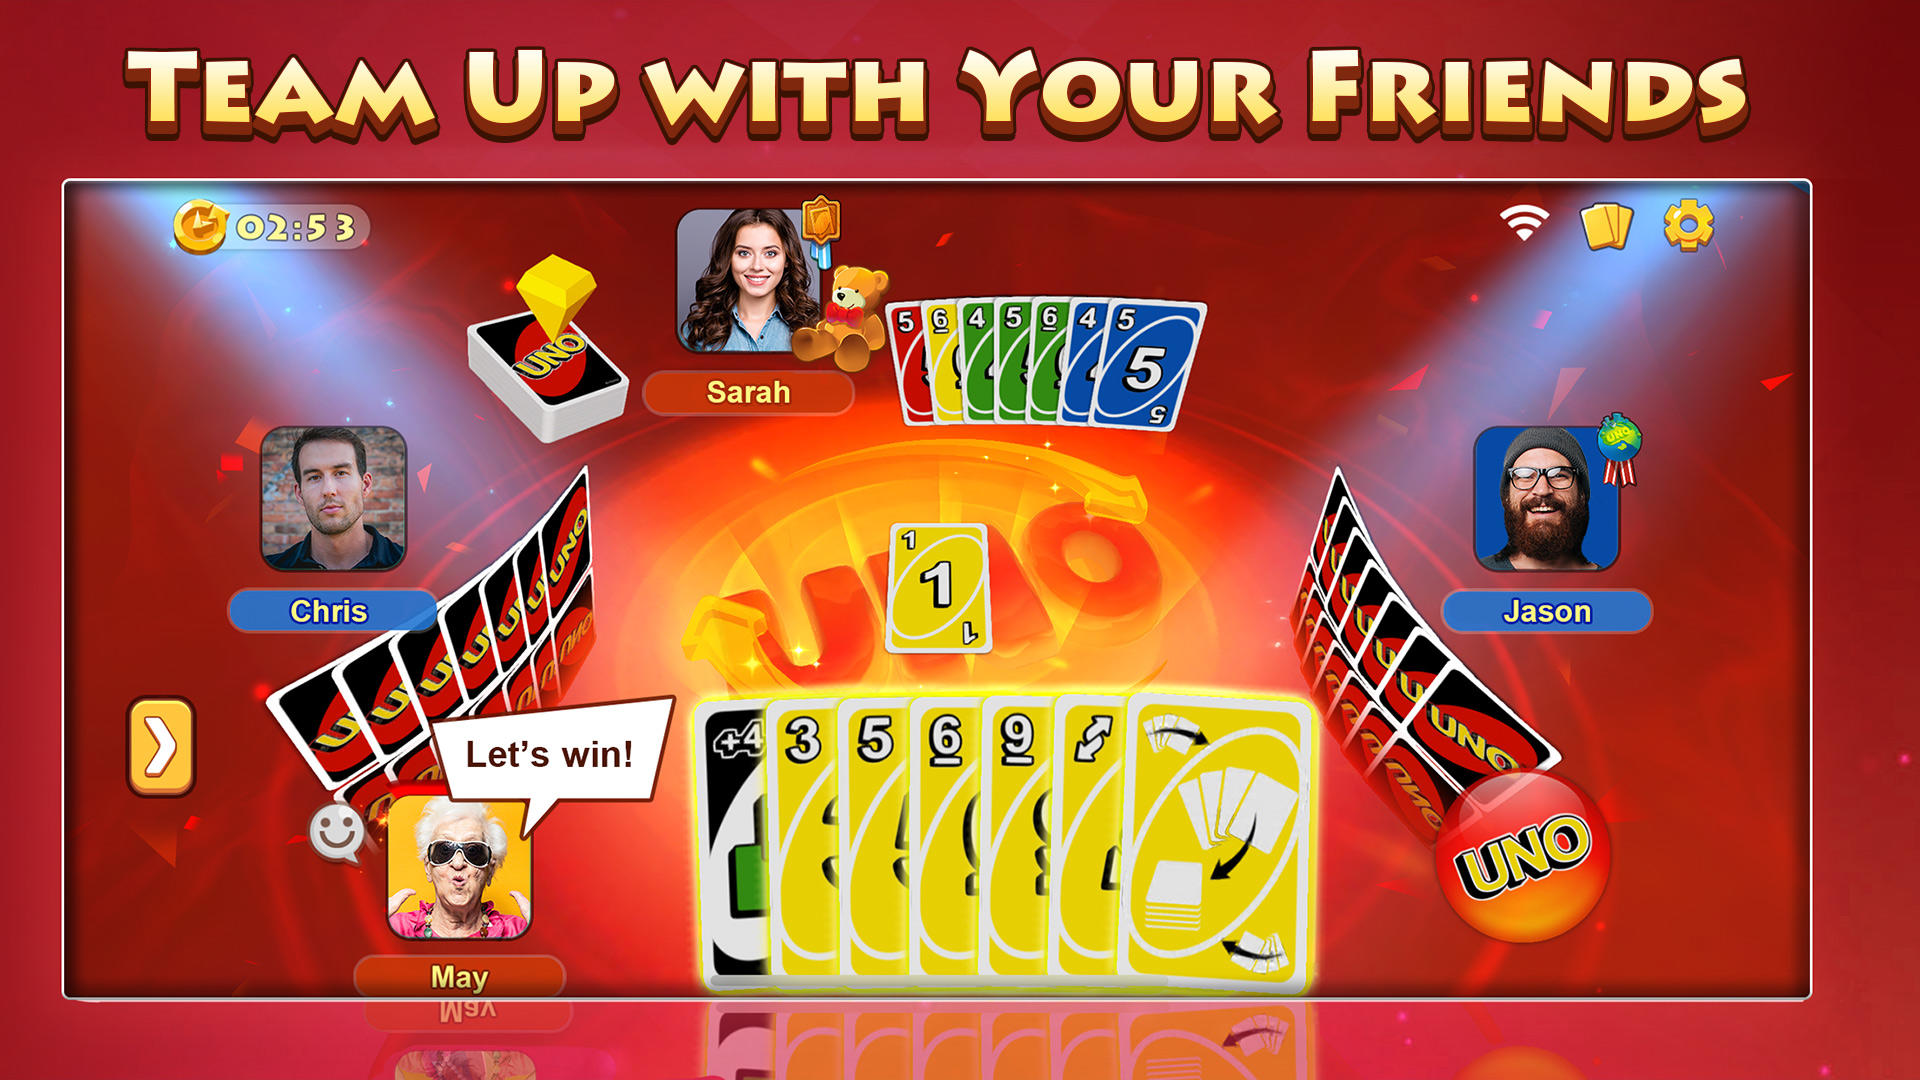 Jogo de cartas Uno Card reverso Uno versão móvel andróide iOS apk baixar  gratuitamente-TapTap